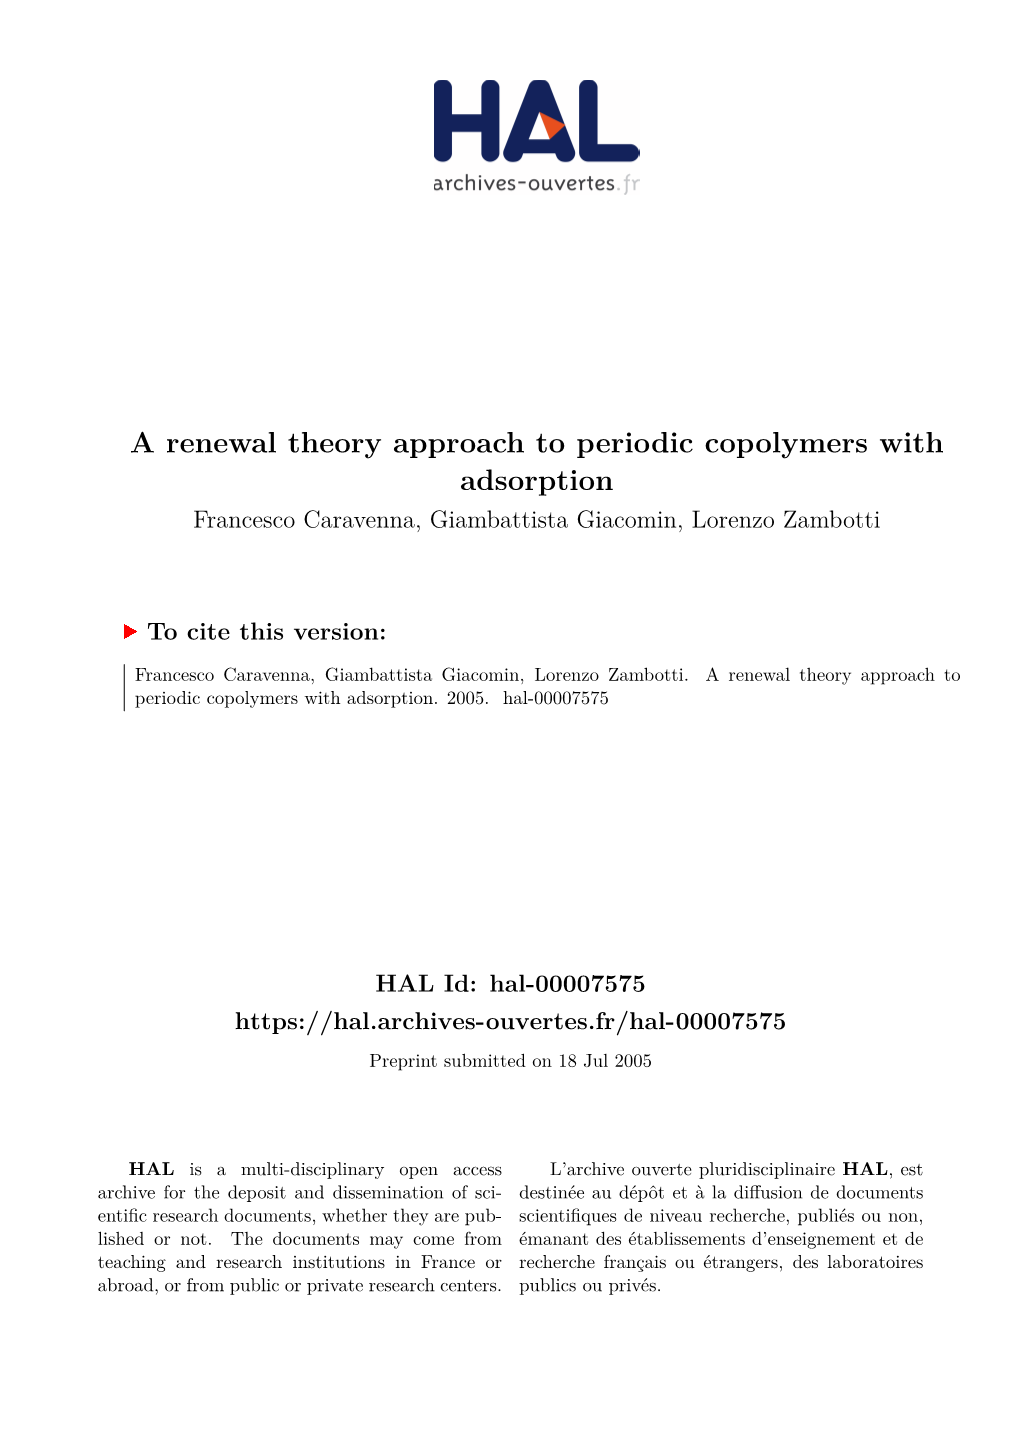 A Renewal Theory Approach to Periodic Copolymers with Adsorption Francesco Caravenna, Giambattista Giacomin, Lorenzo Zambotti